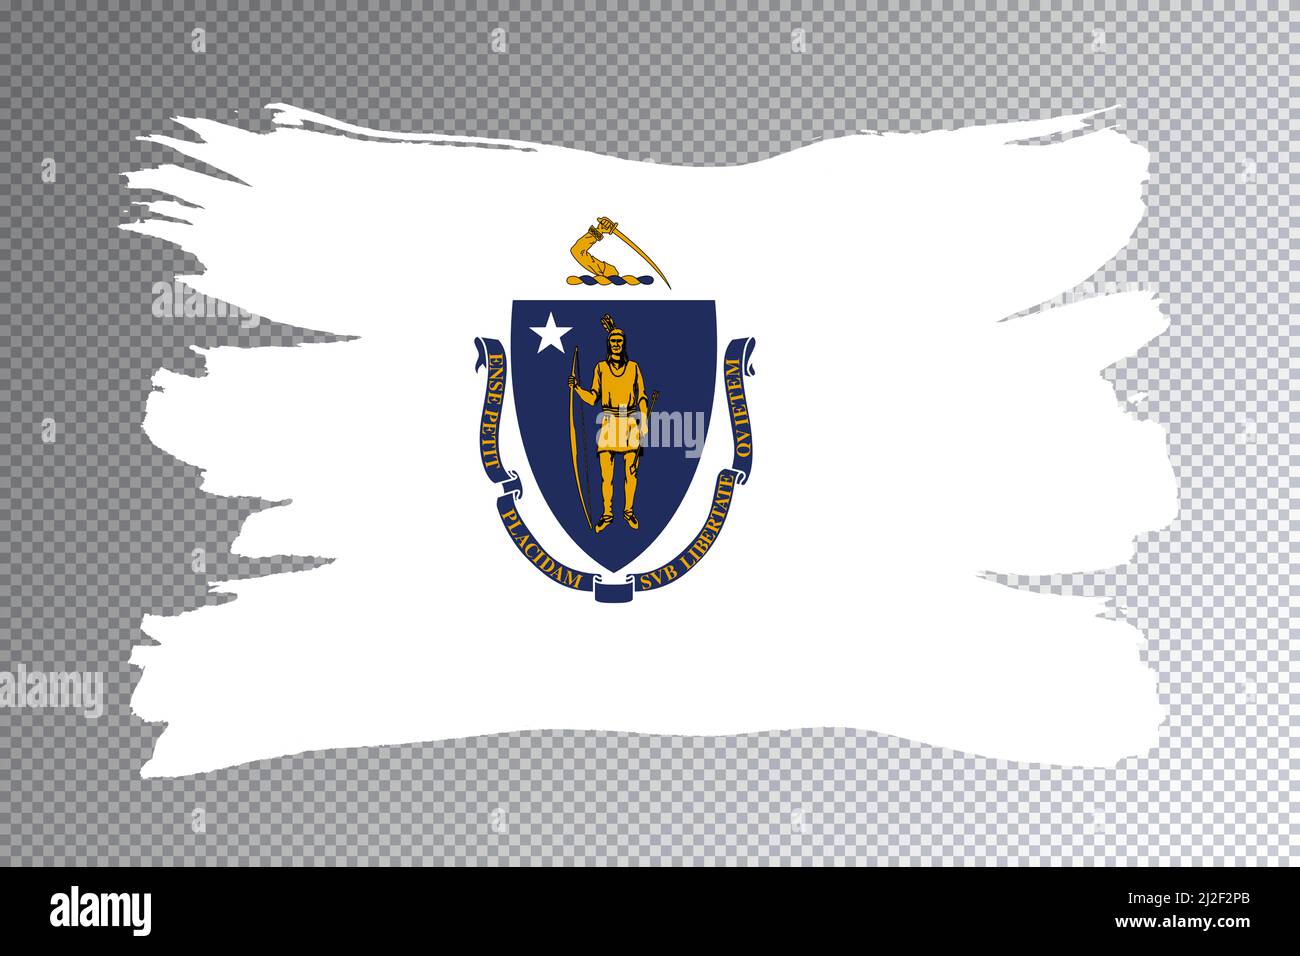 massachusetts-state-flag-massachusetts-flag-transparent-background